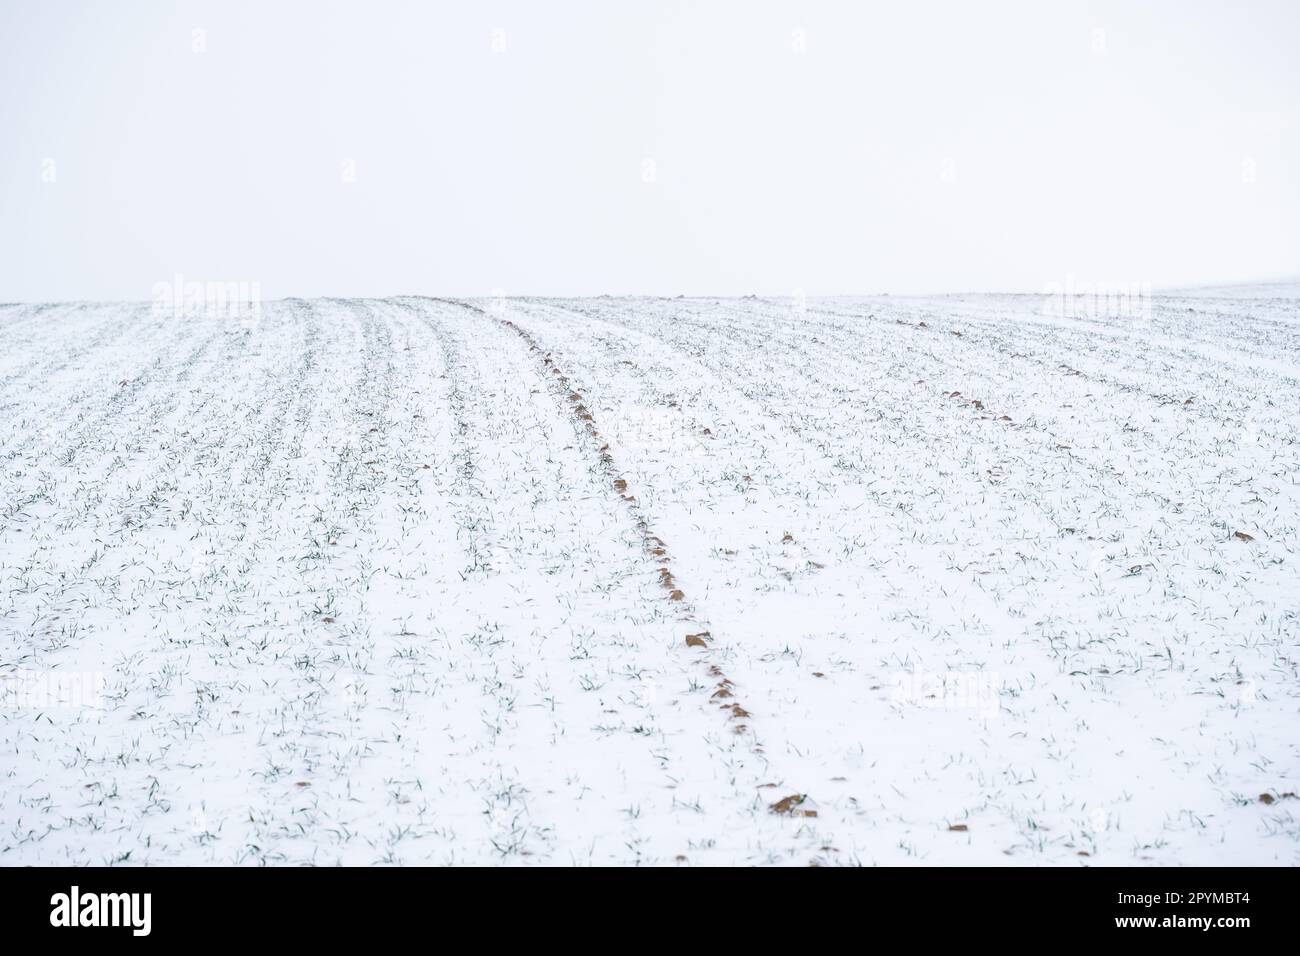 Weizenfeld mit Schneefall in der Wintersaison. Landwirtschaftsprozess mit Kulturen. Stockfoto